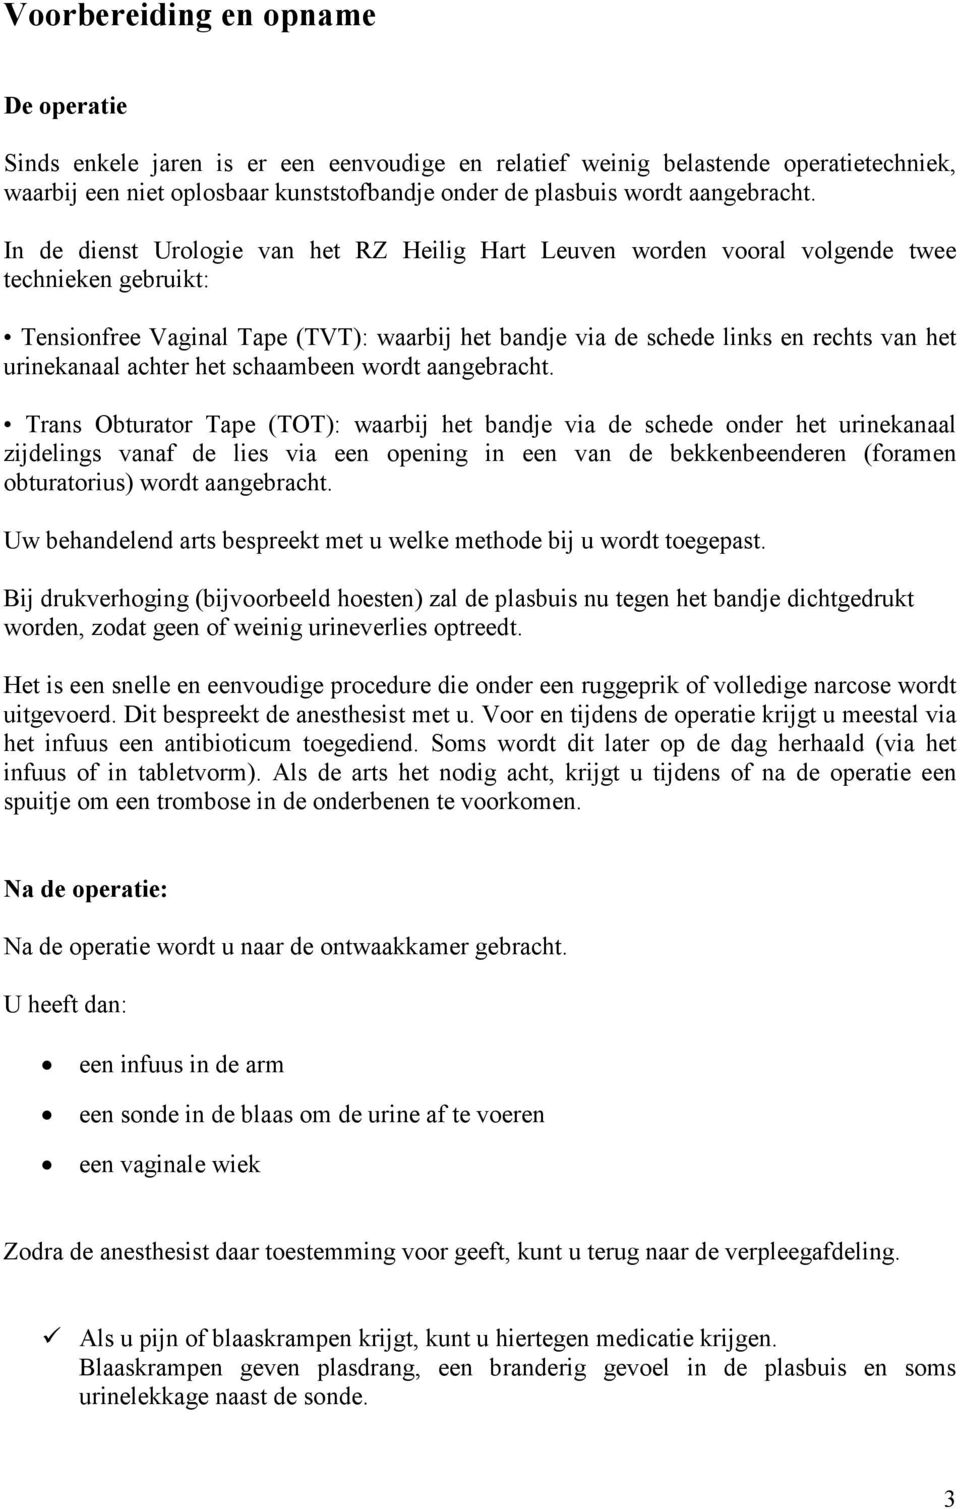 In de dienst Urologie van het RZ Heilig Hart Leuven worden vooral volgende twee technieken gebruikt: Tensionfree Vaginal Tape (TVT): waarbij het bandje via de schede links en rechts van het